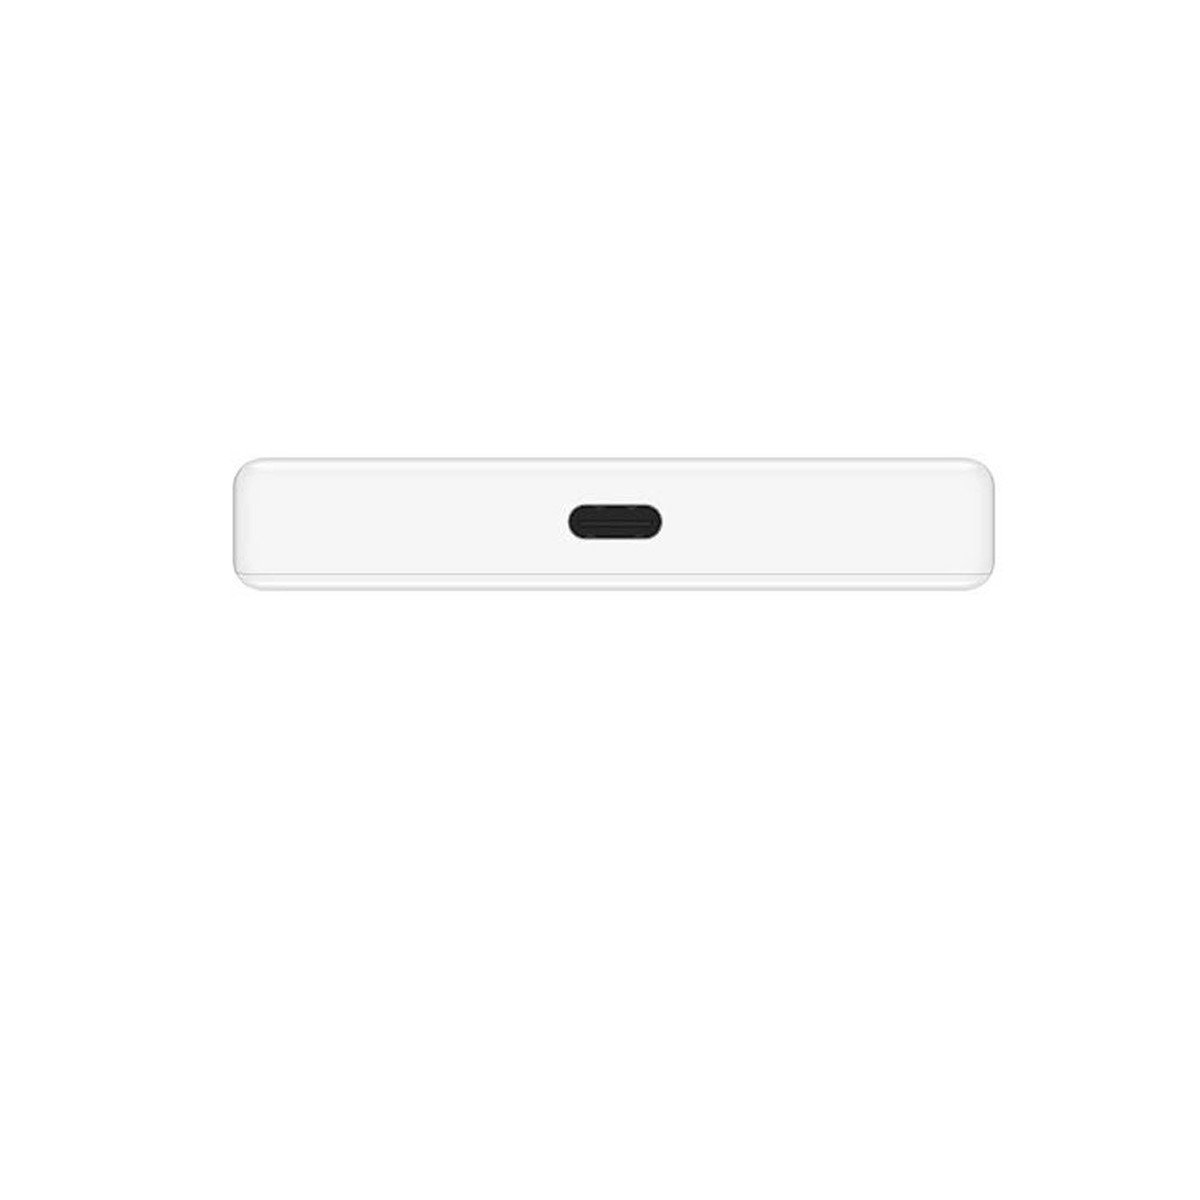 Huawei 5G Portable Router Pro E6878-370,White